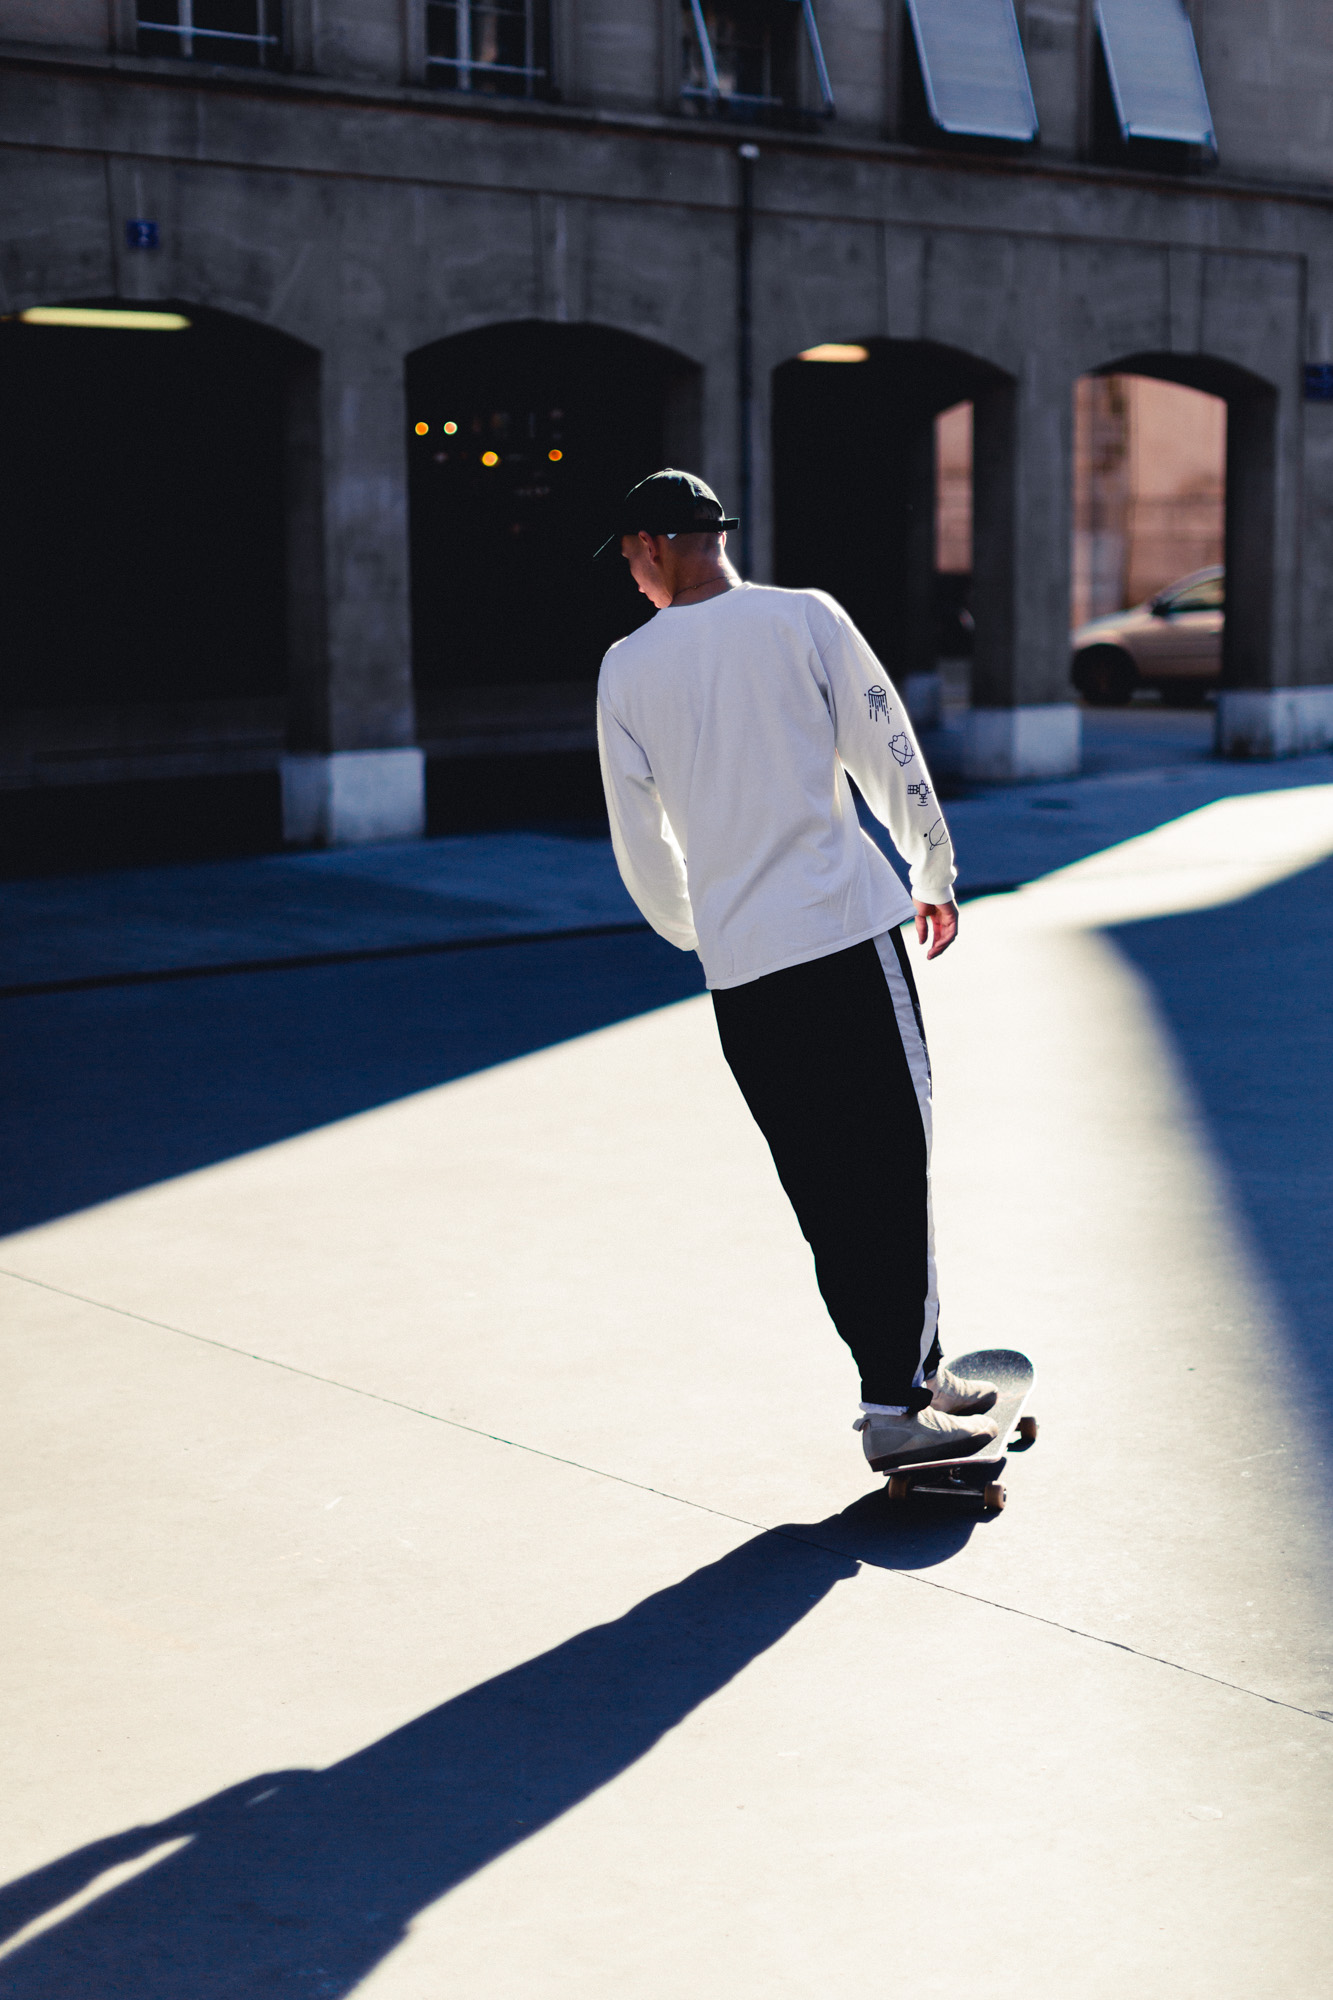 photo d'un skateur sur une planche de skate dos au soleil, projetant son ombre au sol